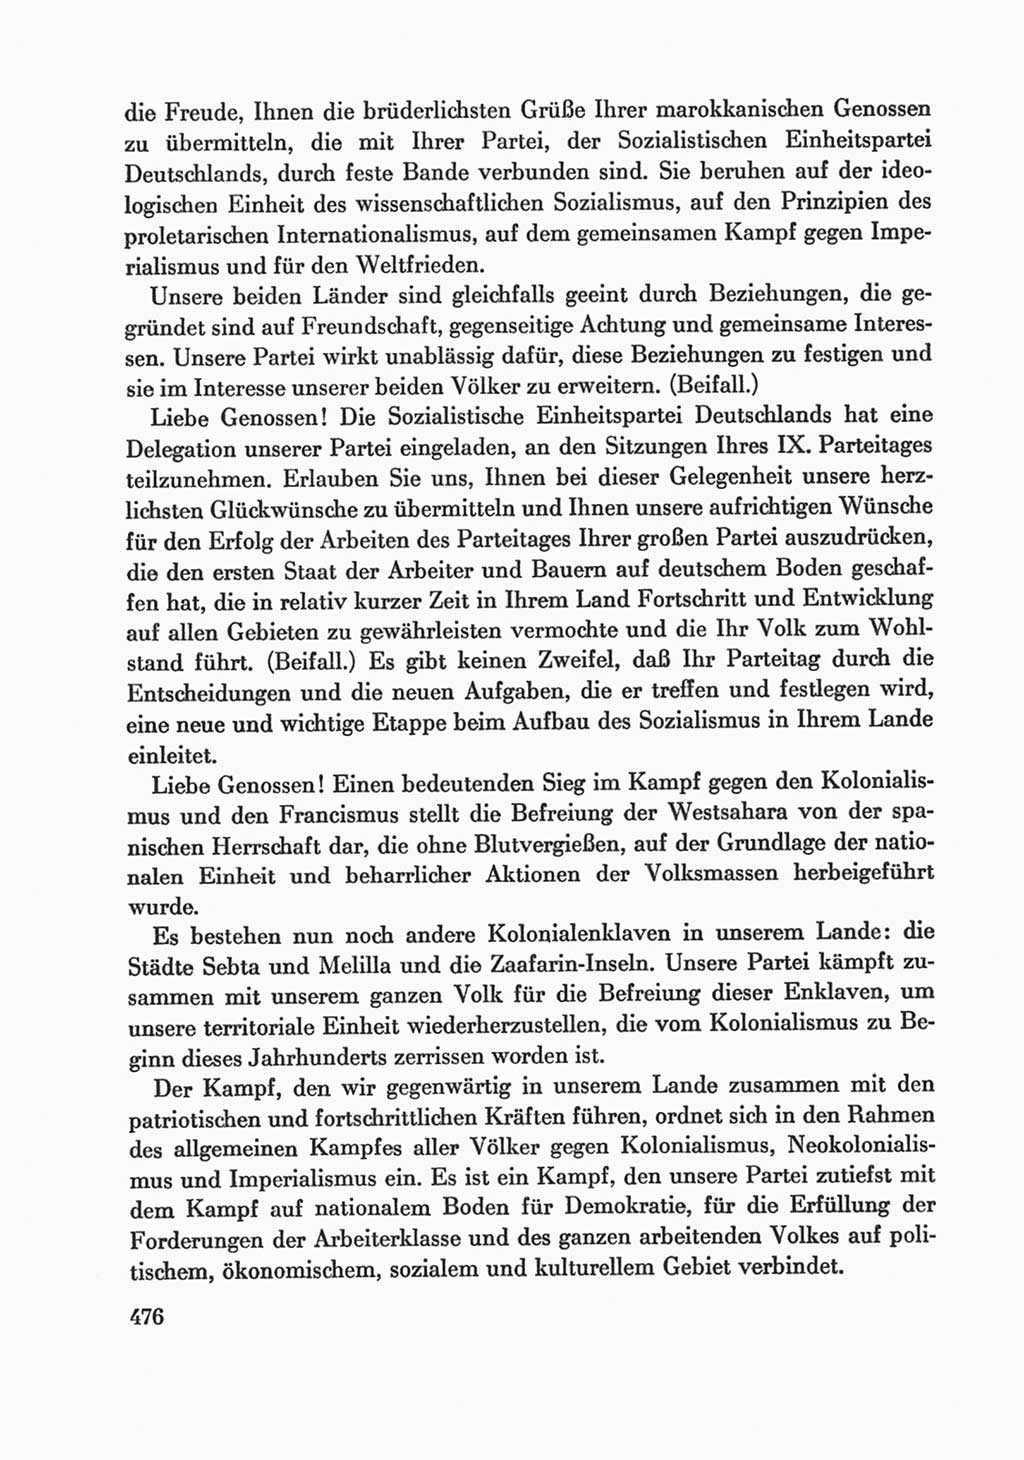 Protokoll der Verhandlungen des Ⅸ. Parteitages der Sozialistischen Einheitspartei Deutschlands (SED) [Deutsche Demokratische Republik (DDR)] 1976, Band 1, Seite 476 (Prot. Verh. Ⅸ. PT SED DDR 1976, Bd. 1, S. 476)